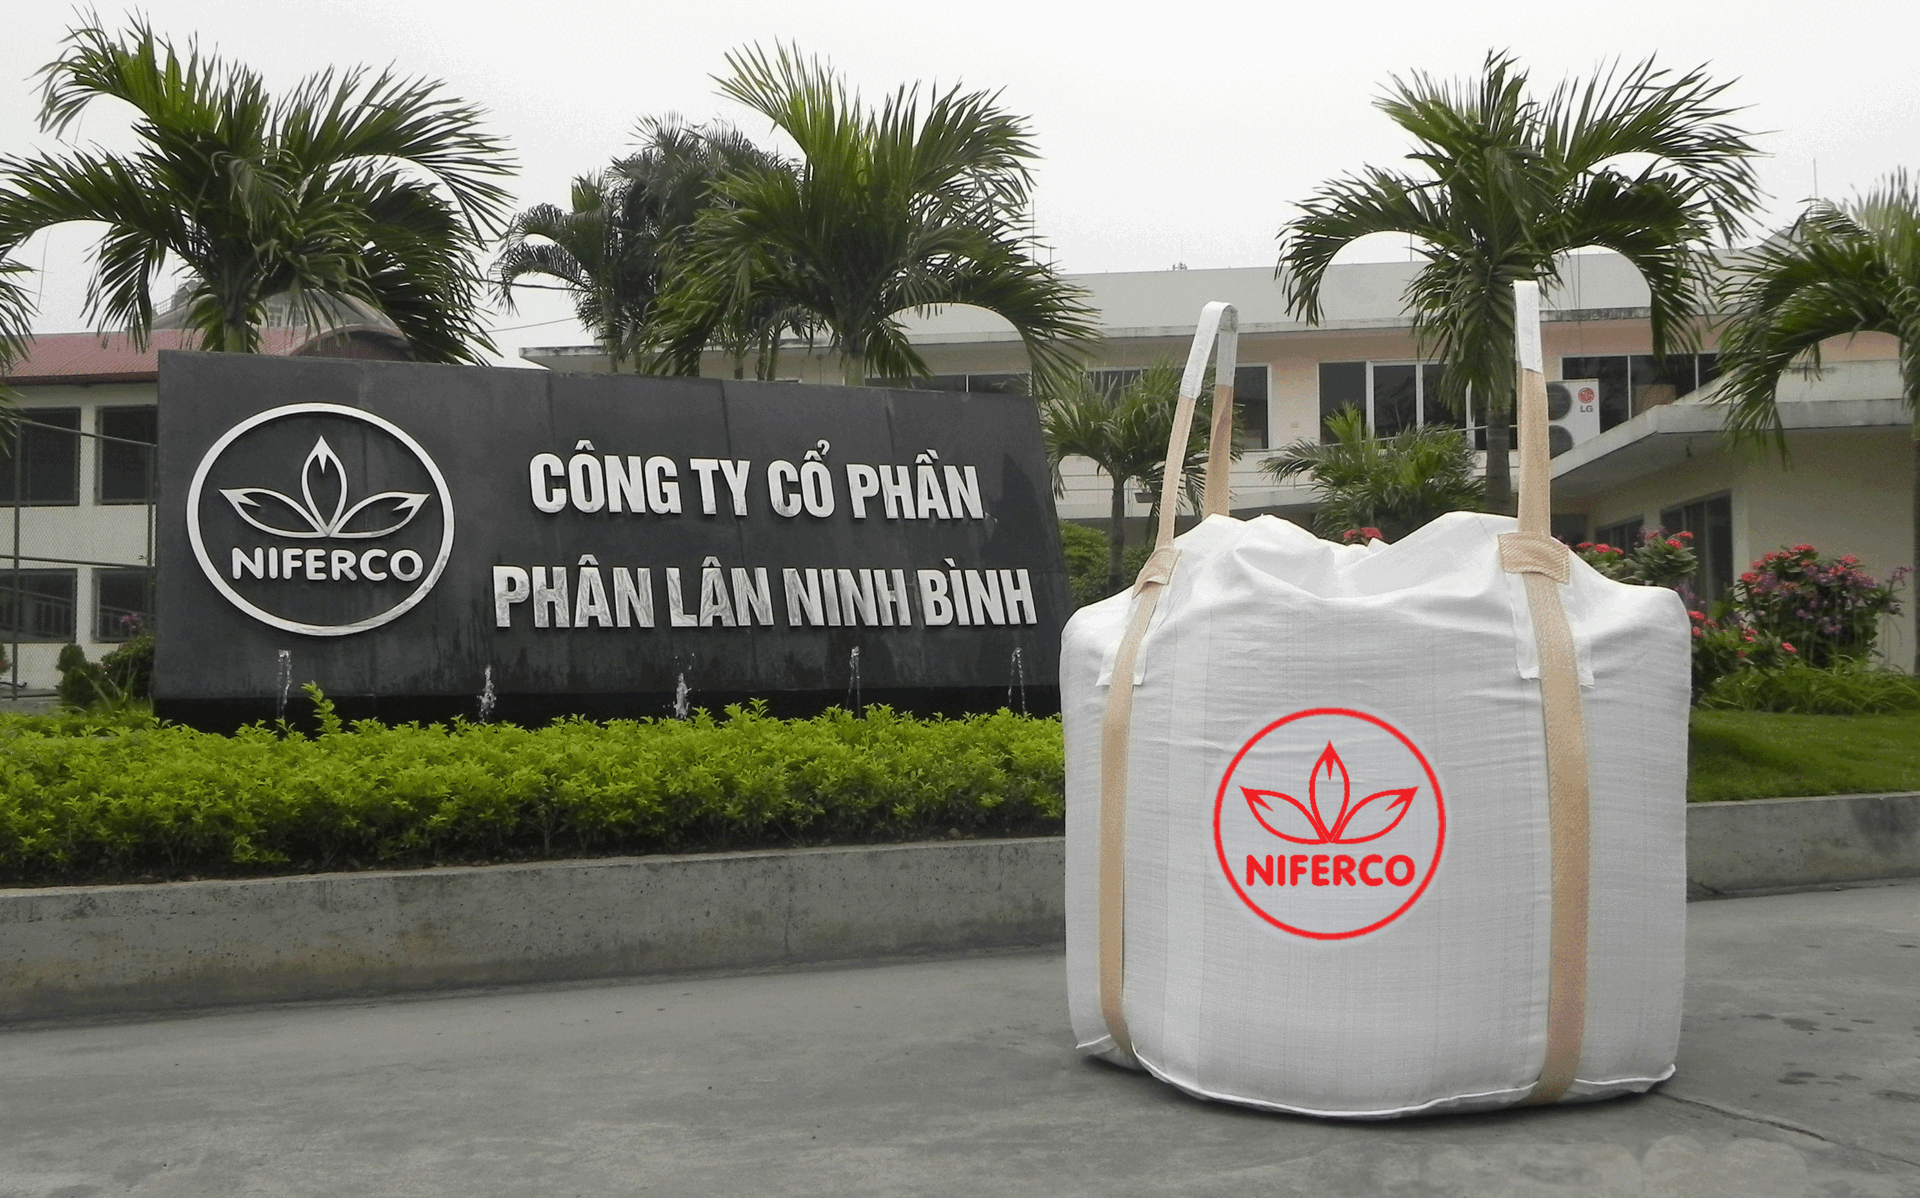 Sản phẩm lân nung chảy bao jumbo xuất khẩu của Công ty Cổ phần Phân lân Ninh Bình.